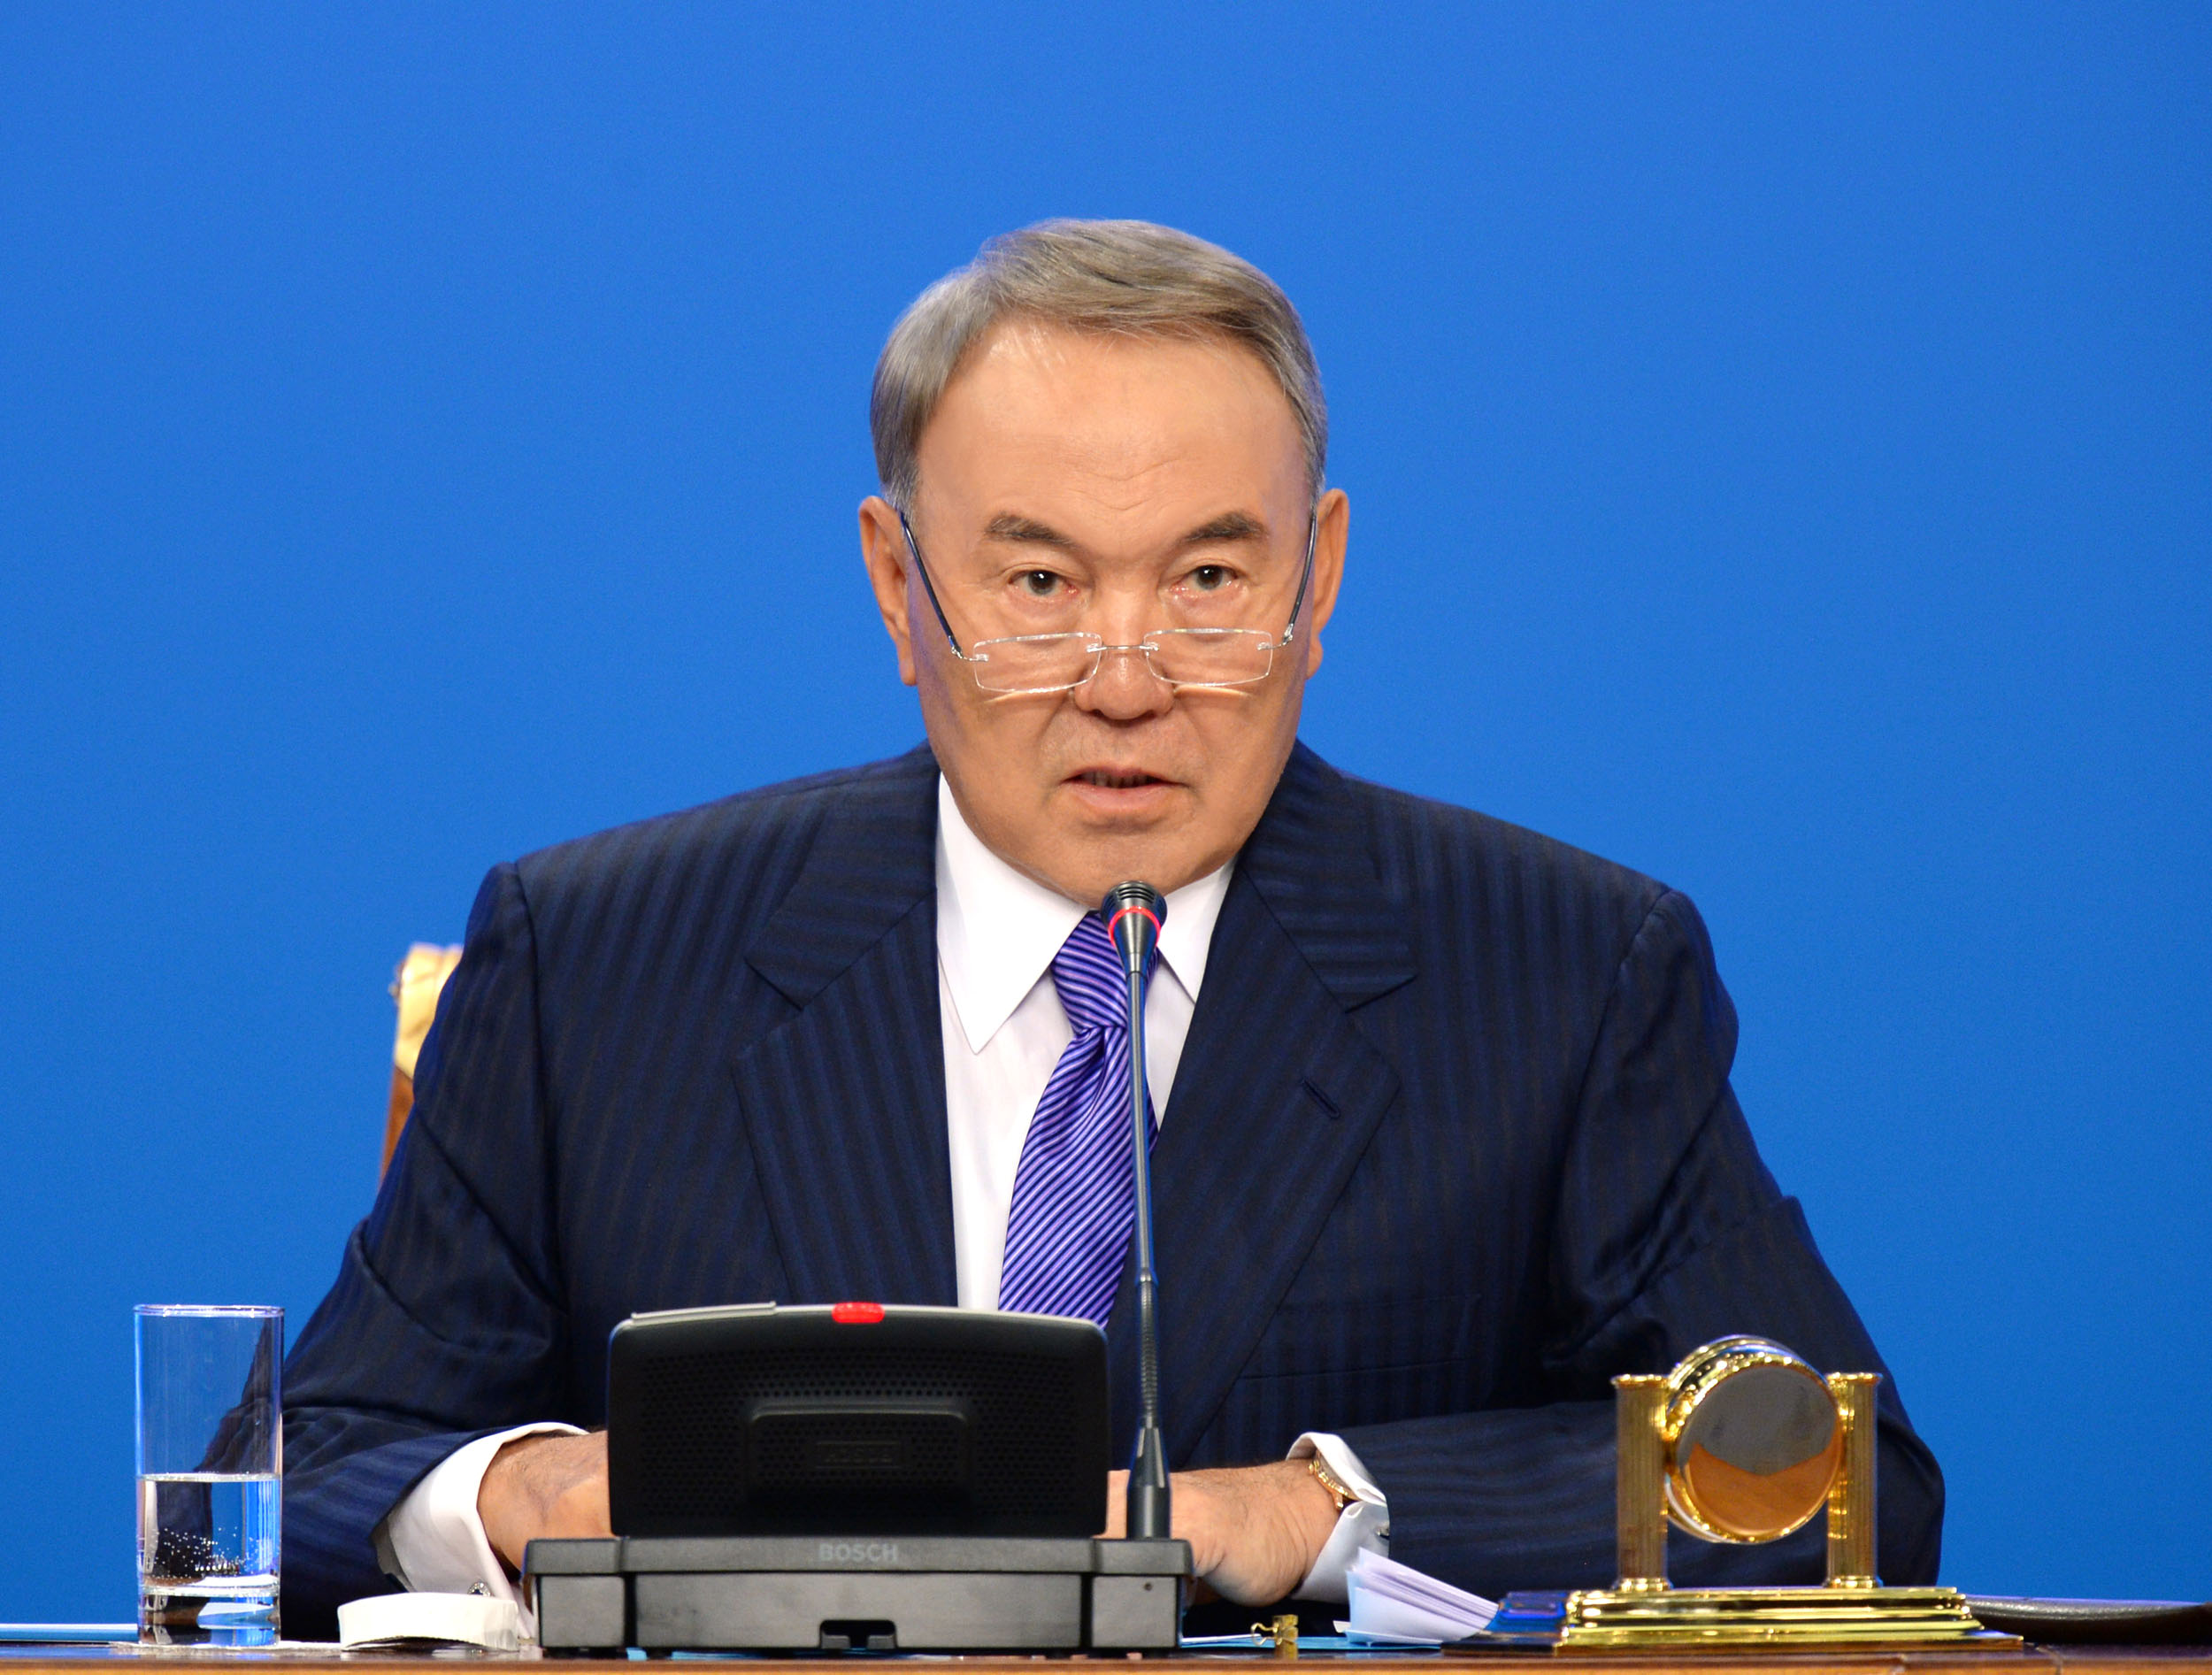 Заңның тиімділігін дихандар біледі, асфальтта жүріп айғайлайтындар емес - Назарбаев